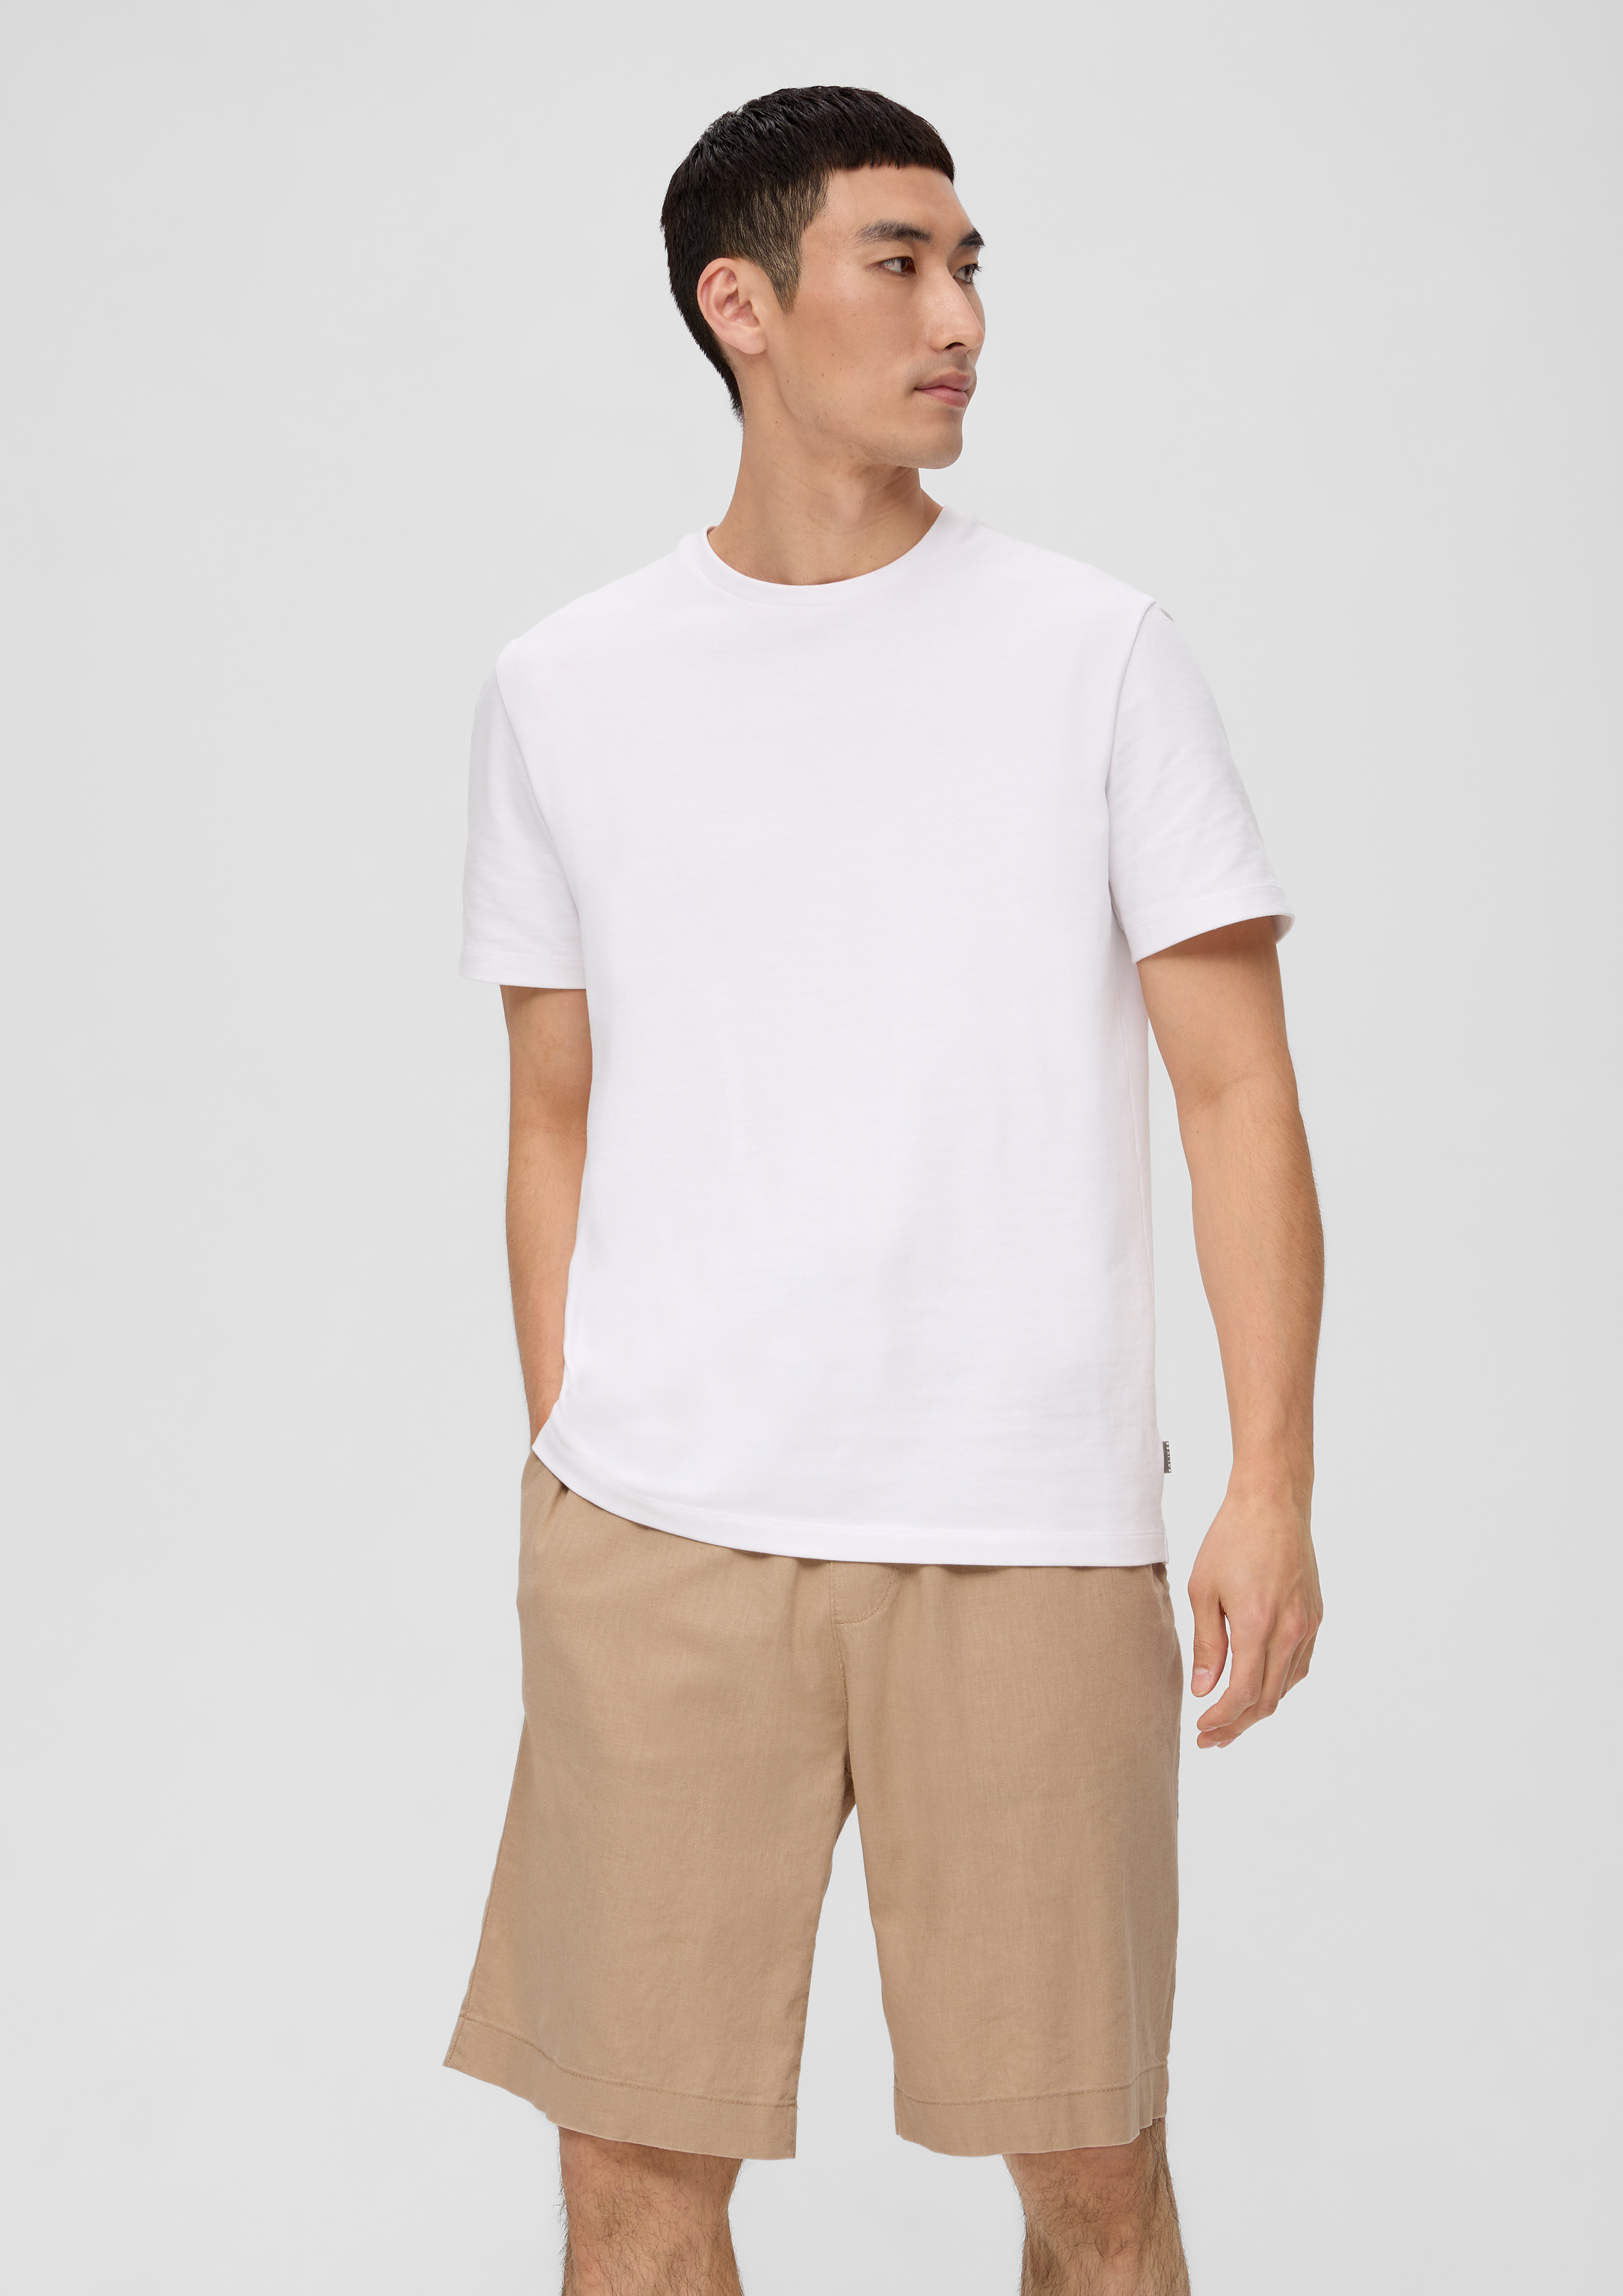 - linen white in Bermuda blended shorts